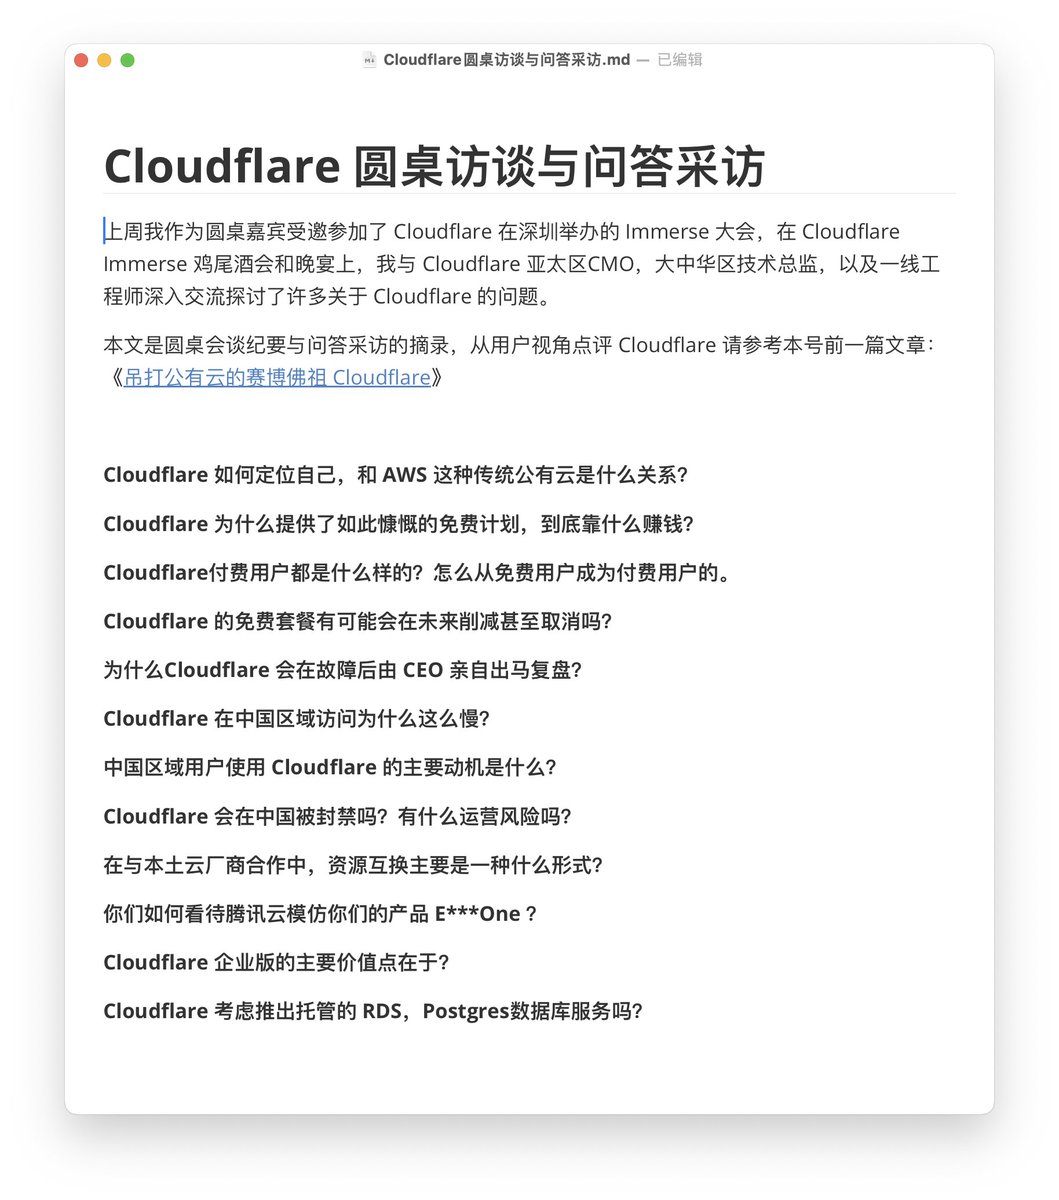 上周去深圳Cloudflare的场子拜了拜赛博佛祖，问了一些广大推友感兴趣的问题，也发表了自己对 Cloudflare 的看法，写成一篇《赛博菩萨Cloudflare圆桌访谈与问答录》
mp.weixin.qq.com/s/jU418HAlObe1…